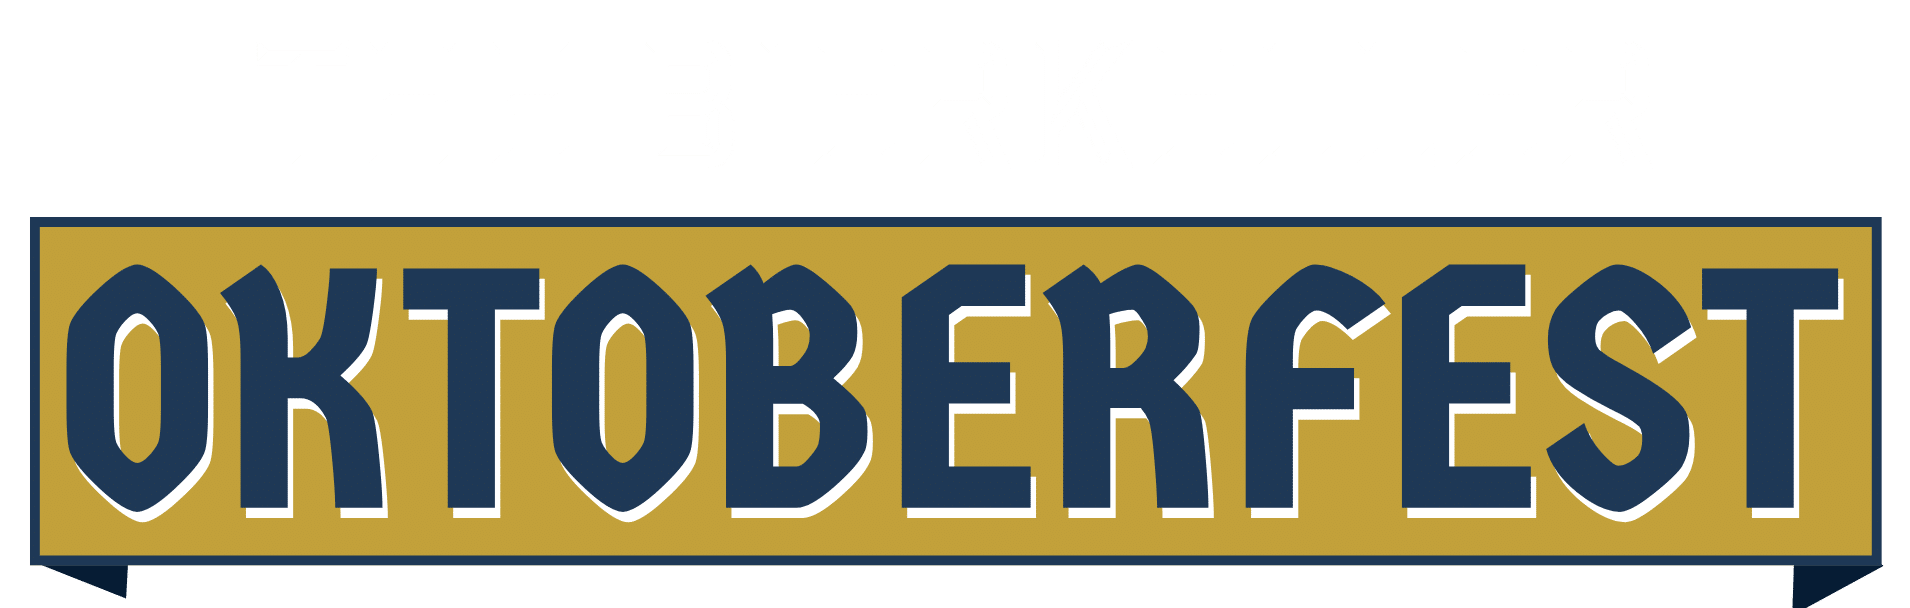 The Bierkeller Oktoberfest Line Up logo